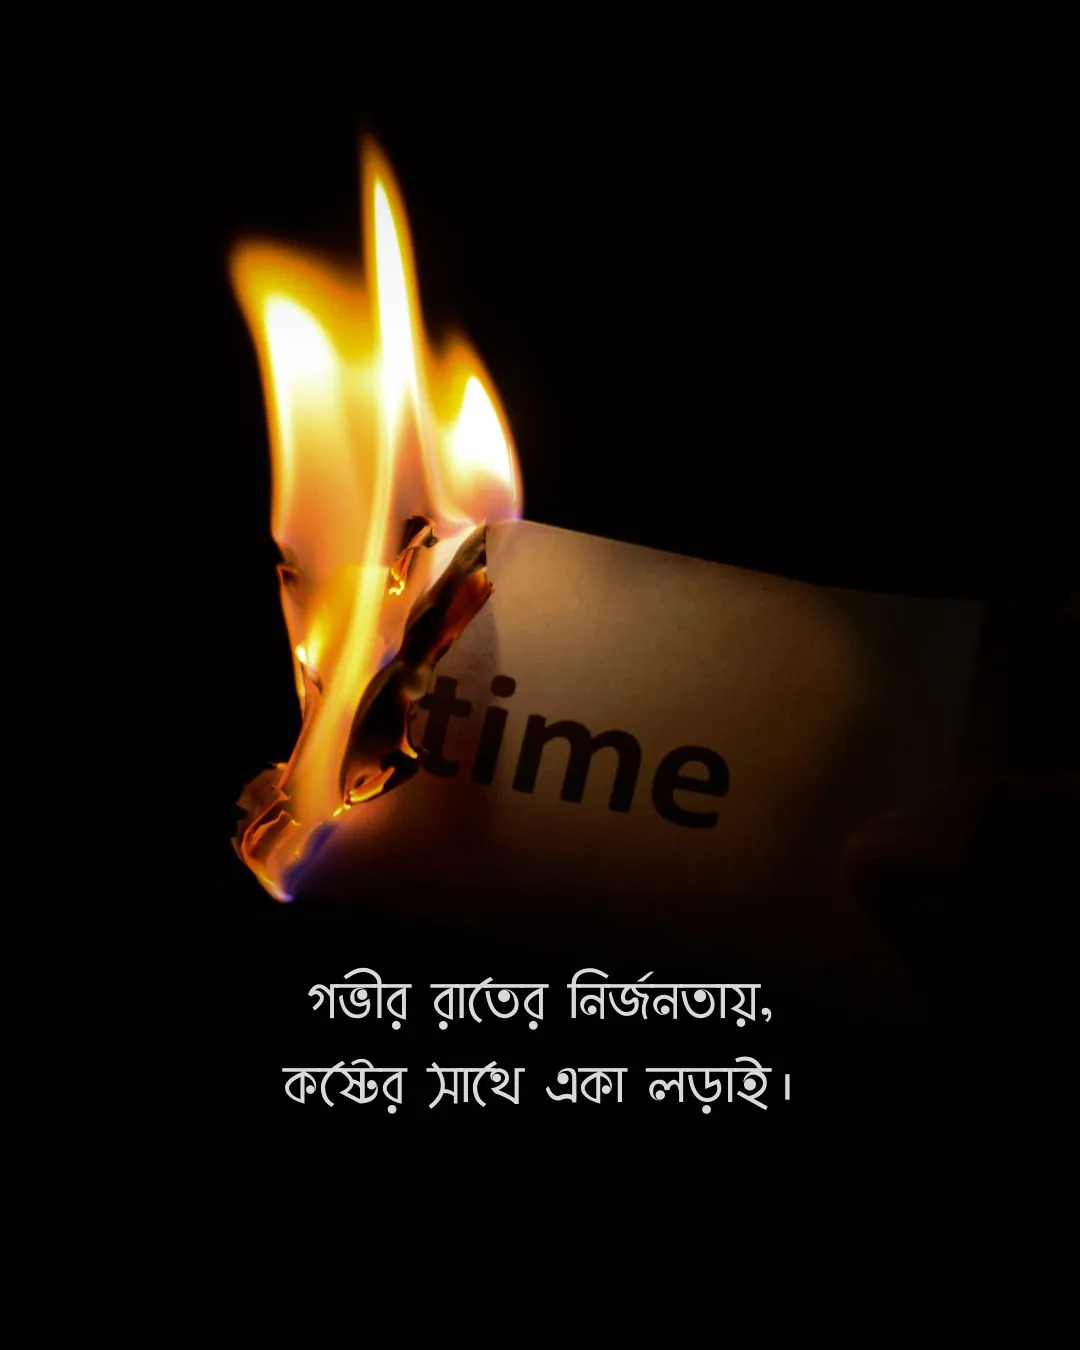 গভীর রাতের নির্জনতায়, কষ্টের সাথে একা লড়াই - sadness pic bangla